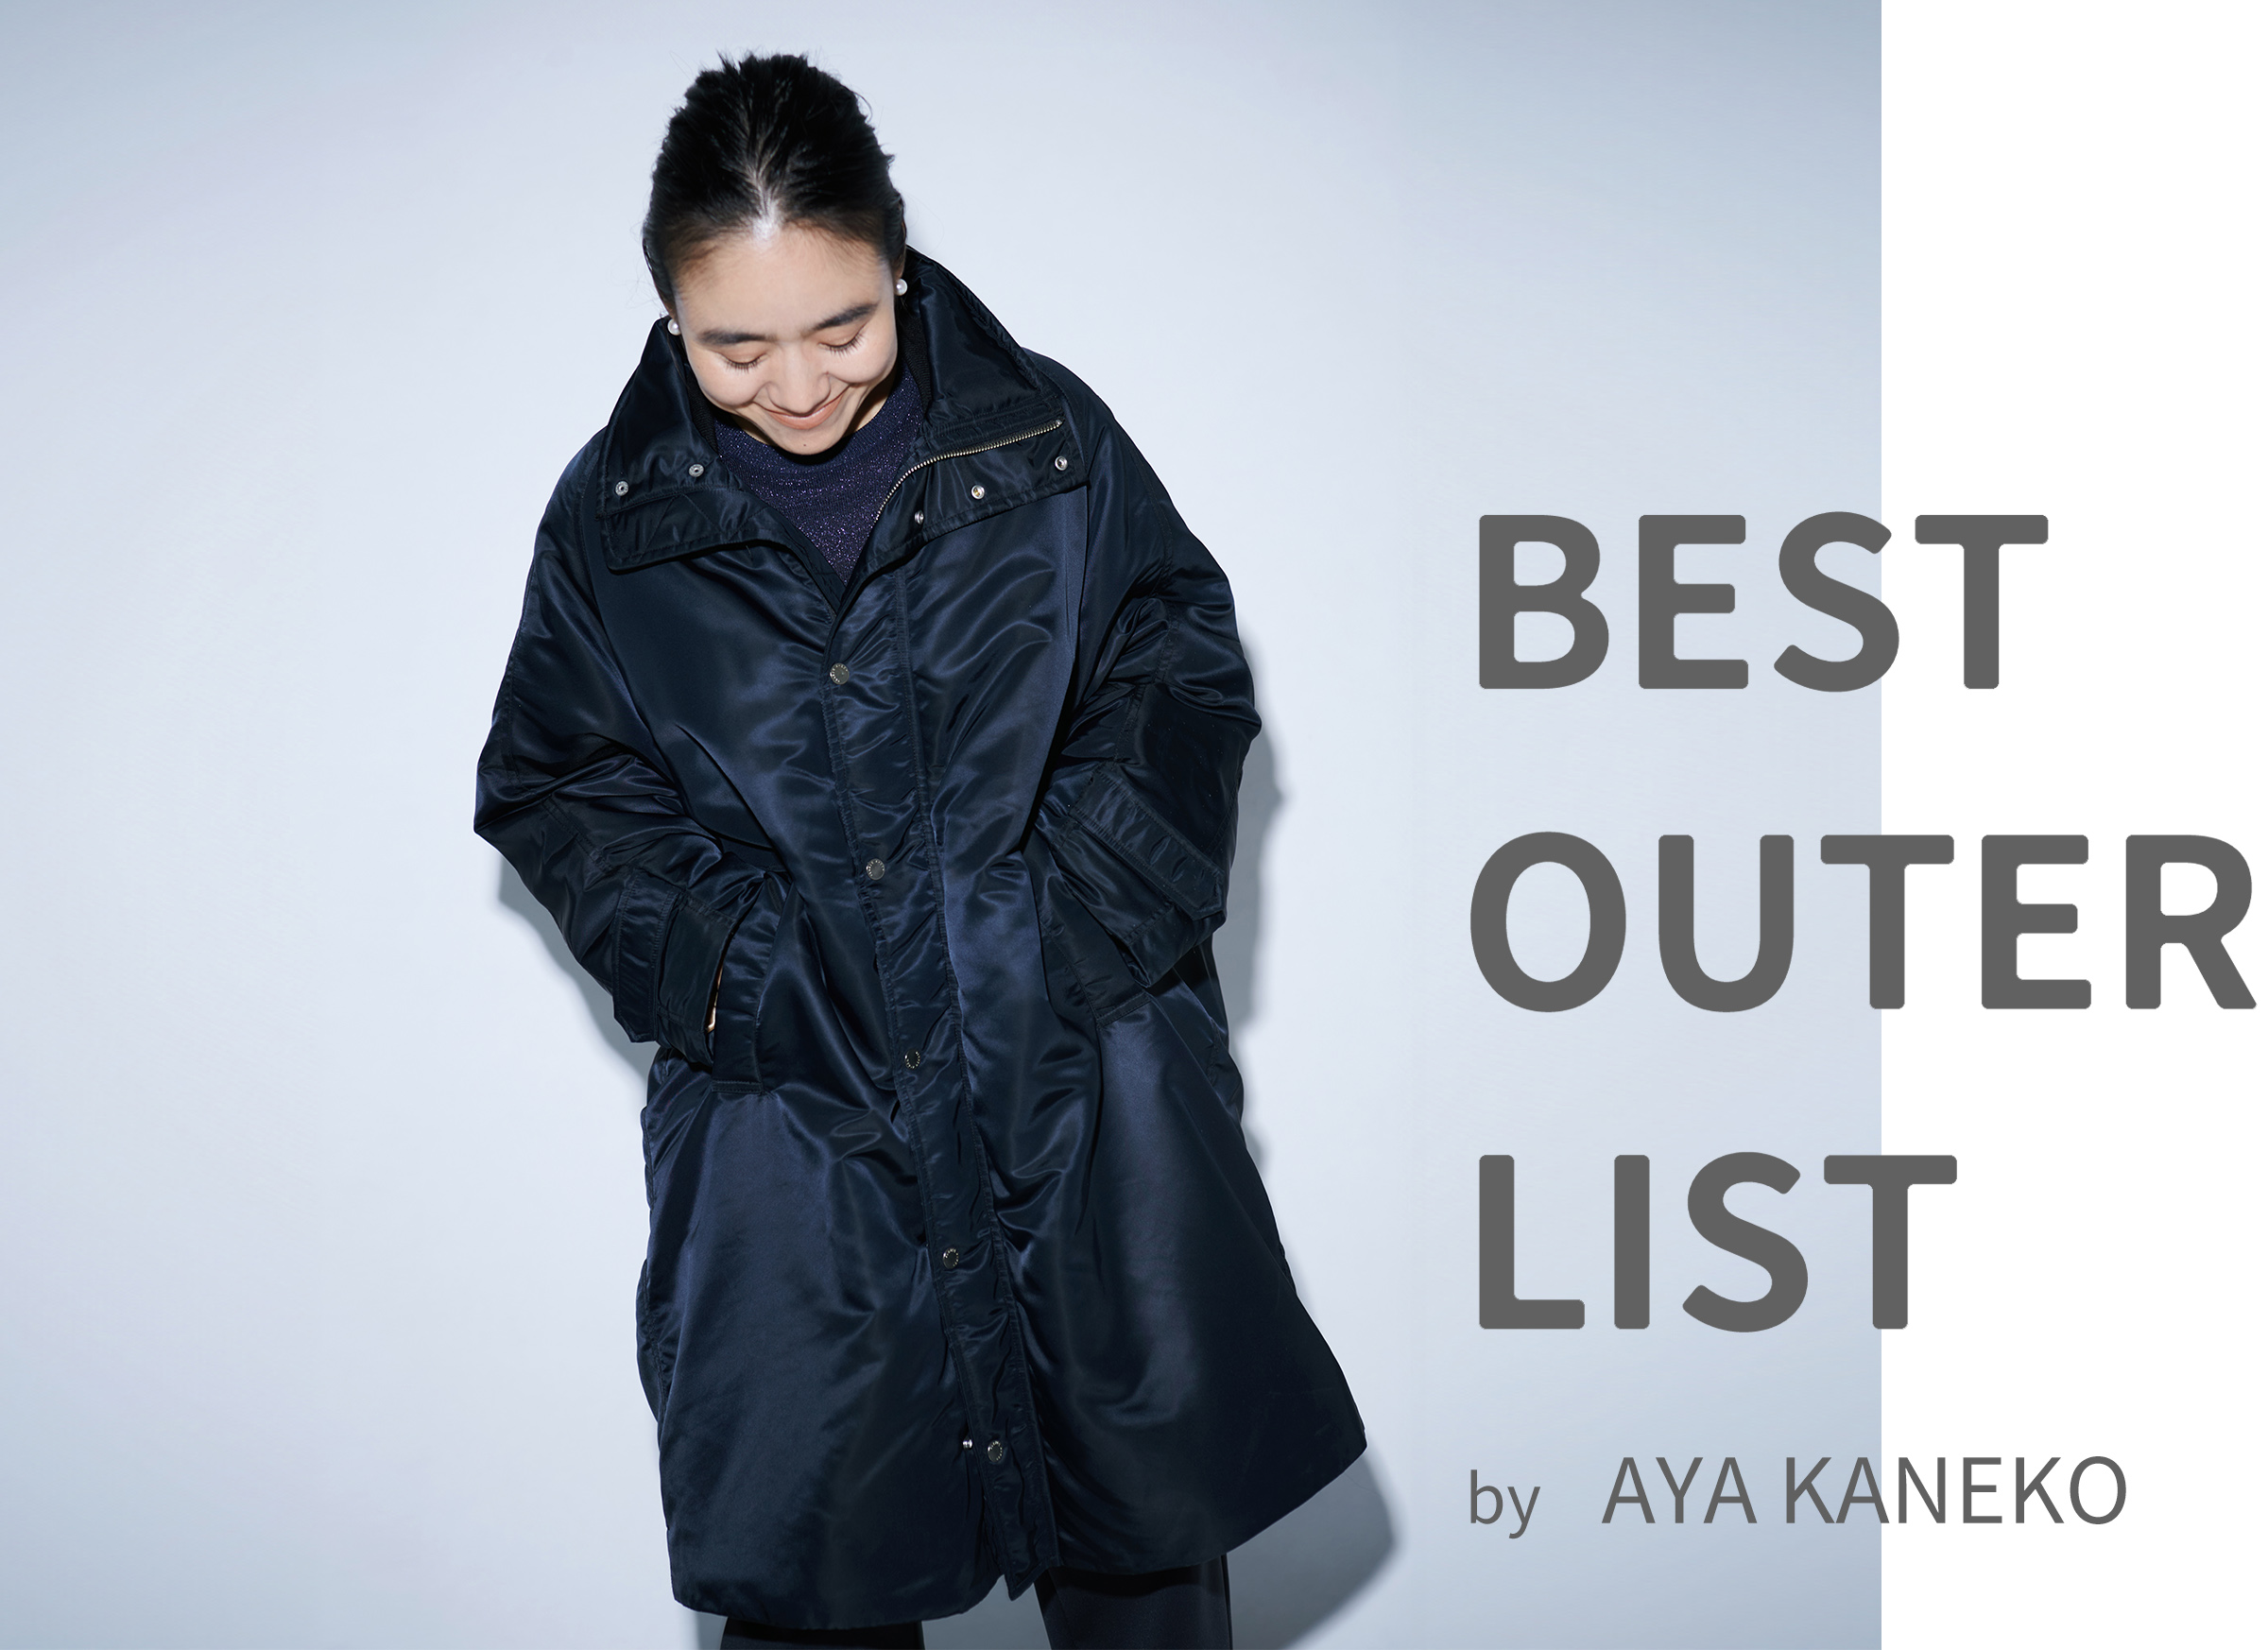 BEST OUTER LIST by AYA KANEKO